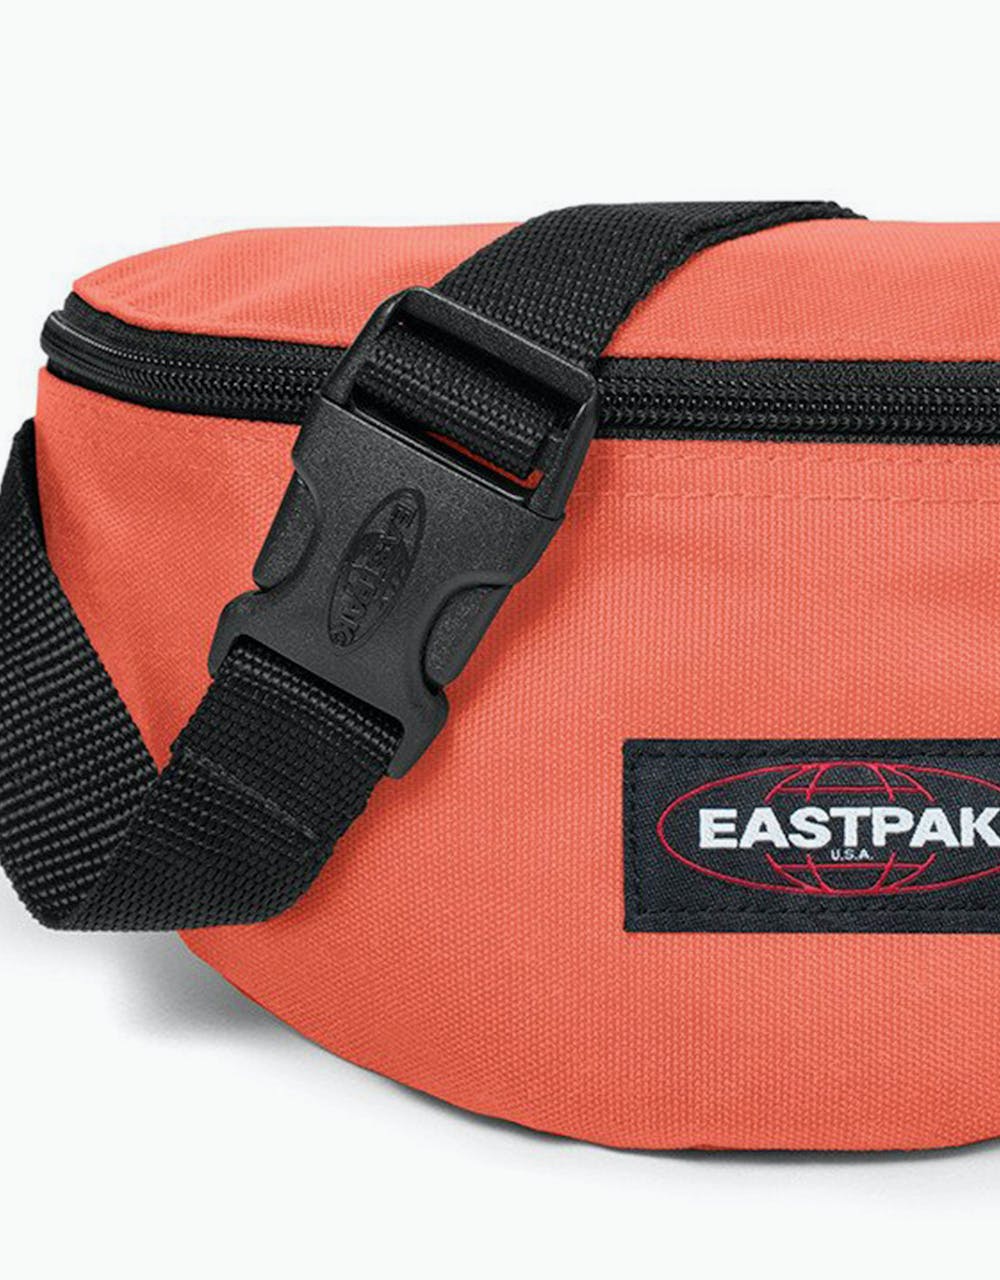 Eastpak Springer Cross Body Bag - Lobster Orange